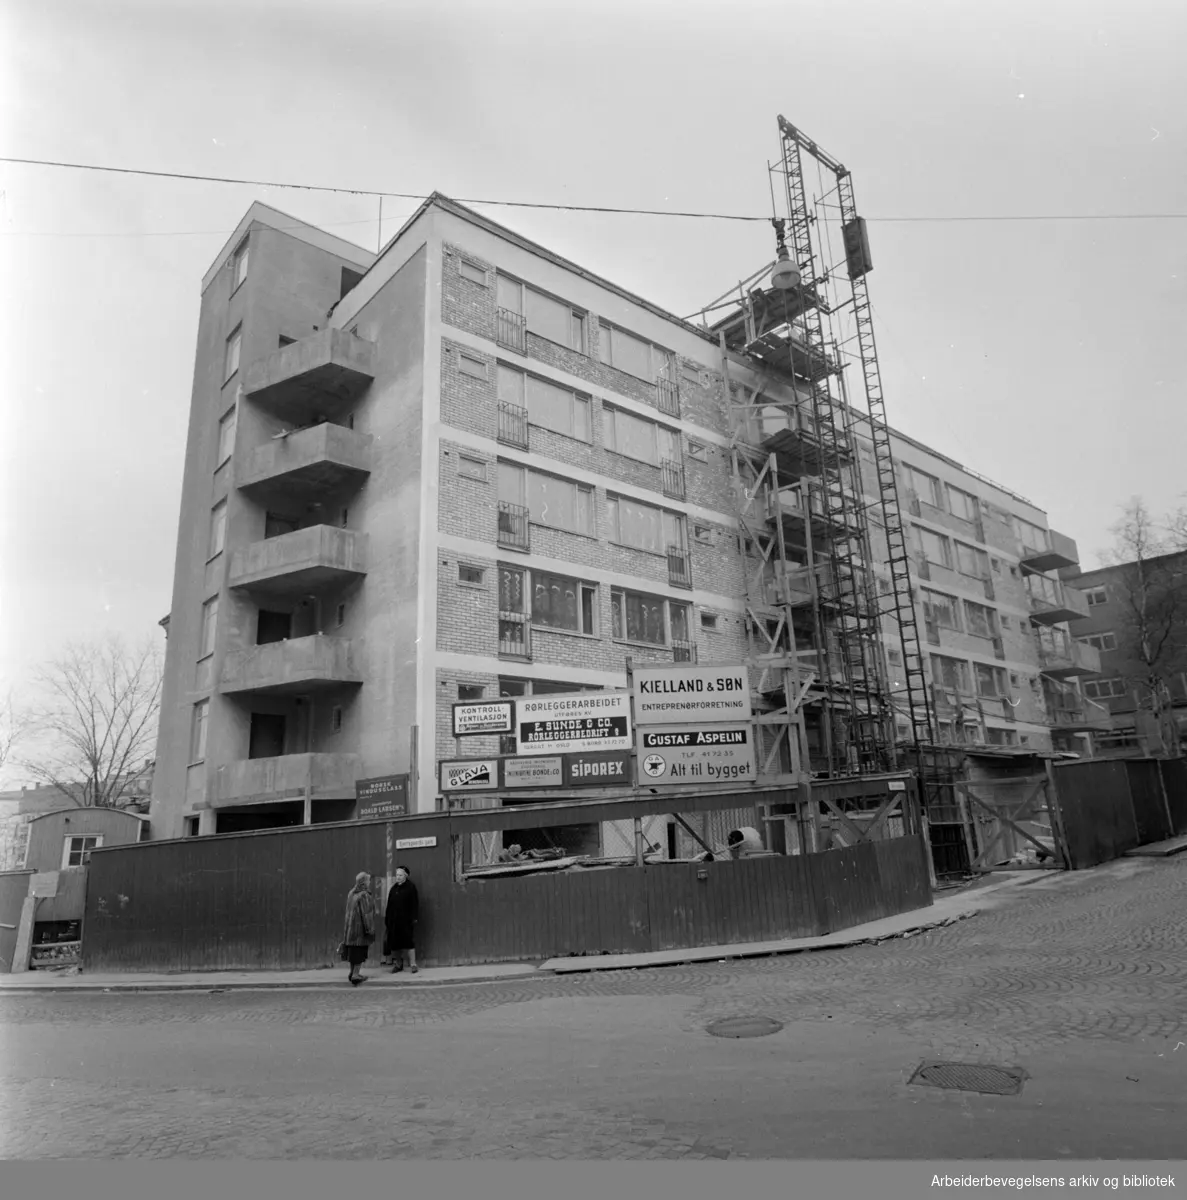 Revmatismesykehuset. Oslo Sanitetsforening reiser hybelhus for sykesøstrene ved Reumatismesykehuset. April 1960